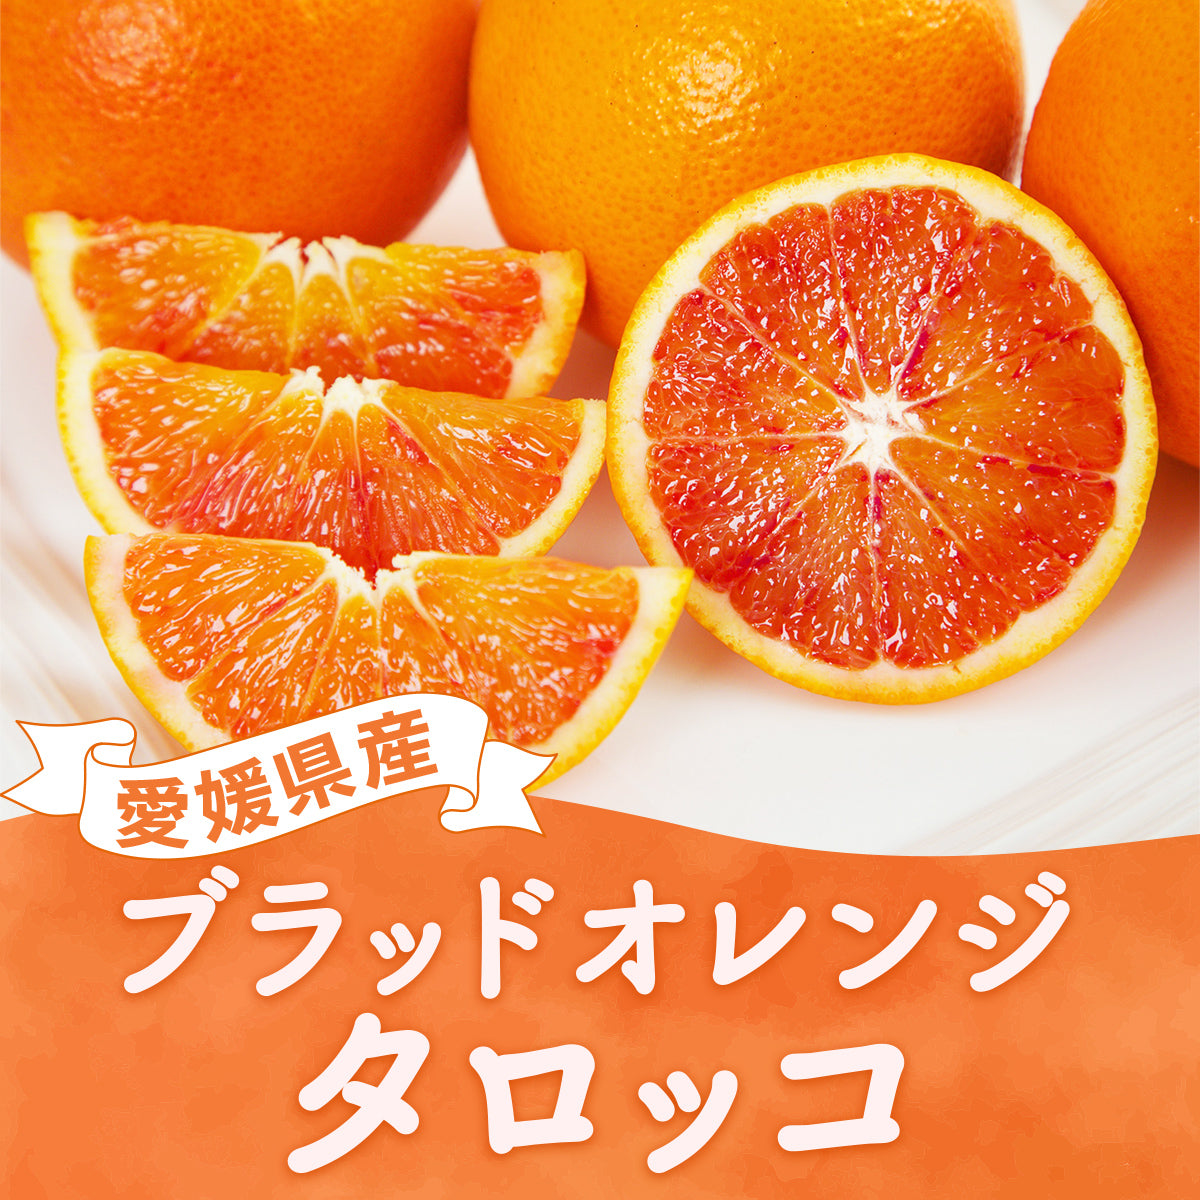 【送料無料】愛媛県産ブラッドオレンジ「タロッコ」